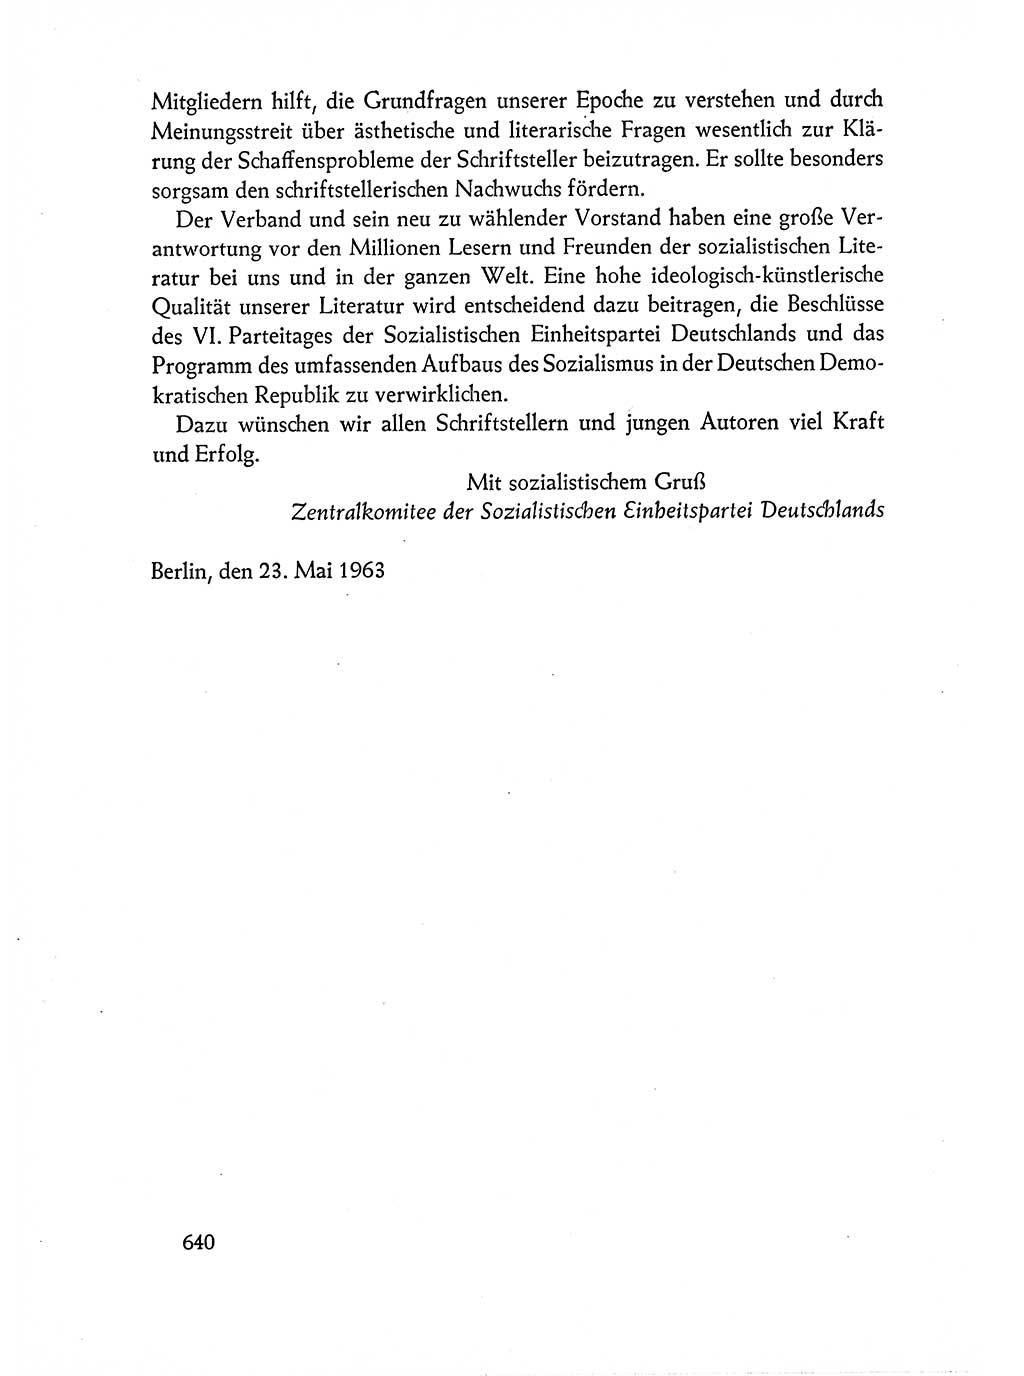 Dokumente der Sozialistischen Einheitspartei Deutschlands (SED) [Deutsche Demokratische Republik (DDR)] 1962-1963, Seite 640 (Dok. SED DDR 1962-1963, S. 640)